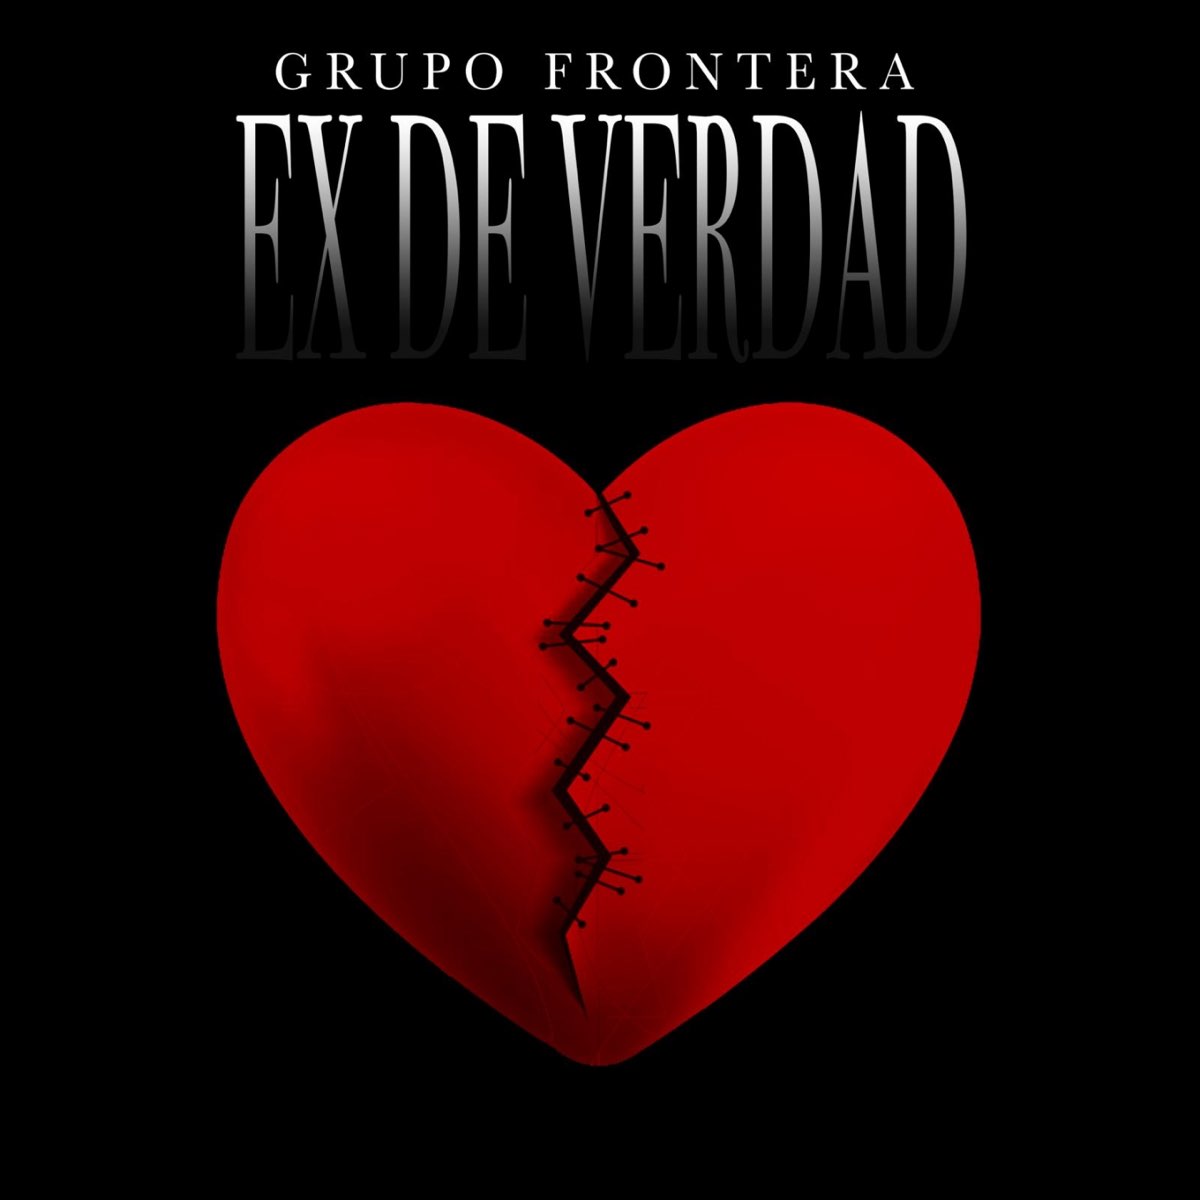 Grupo Frontera Ex de Verdad cover artwork